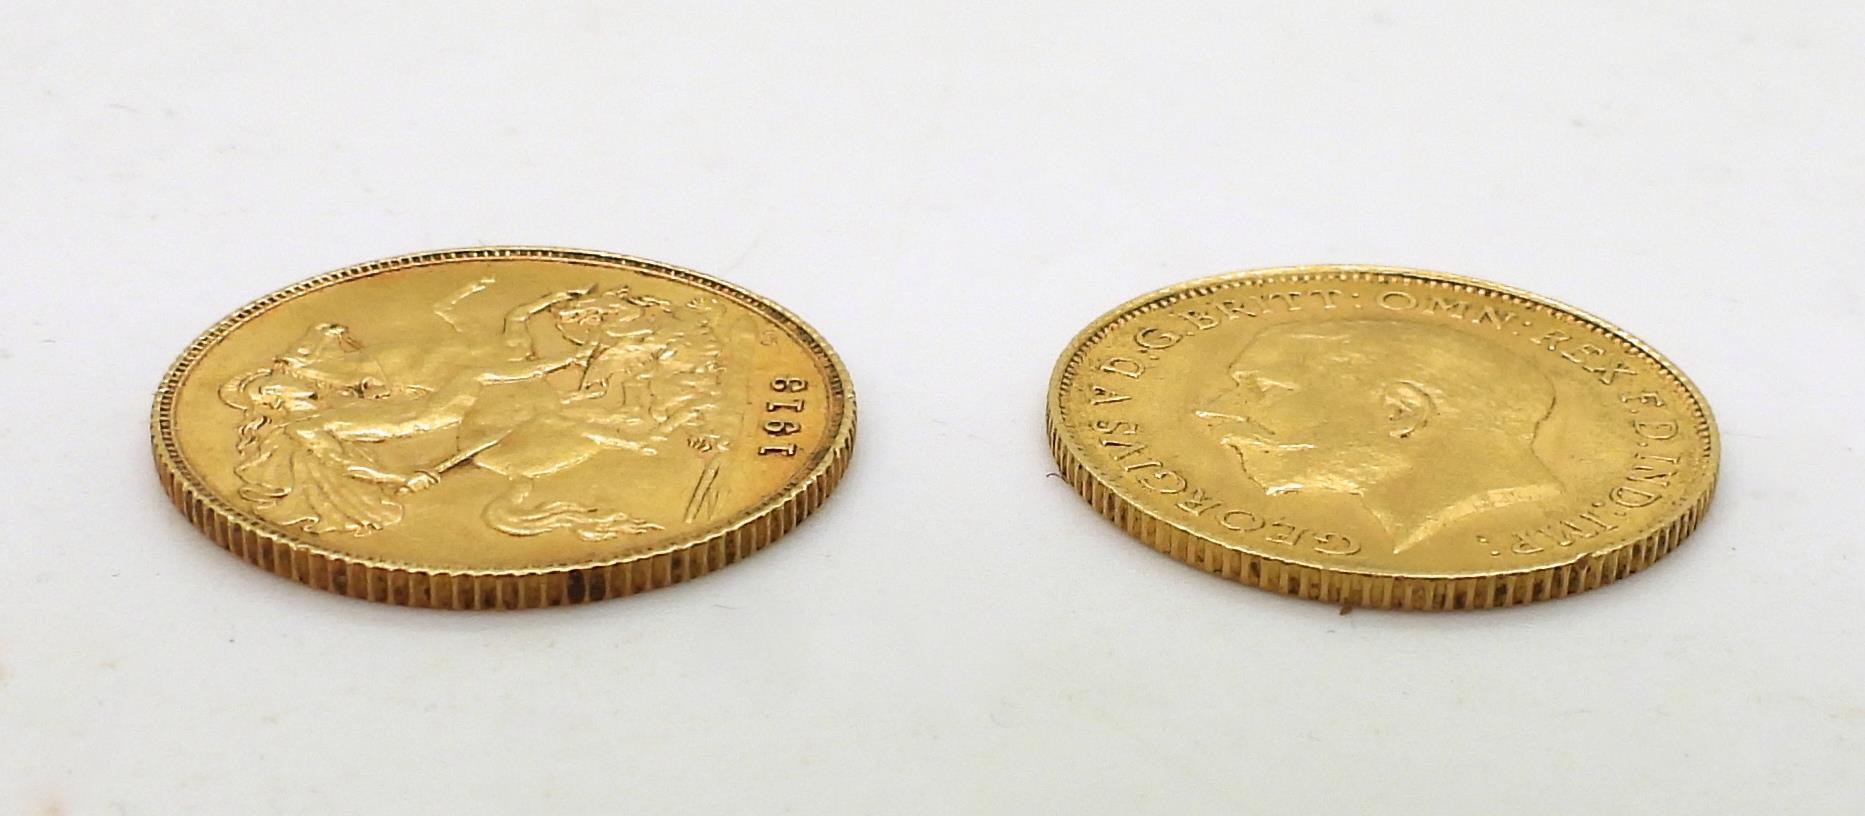 George V (1910-1936) 1/2 sovereign coins 1913 4grams, 1914 4 grams Obverse Portrait of King George V - Image 3 of 3